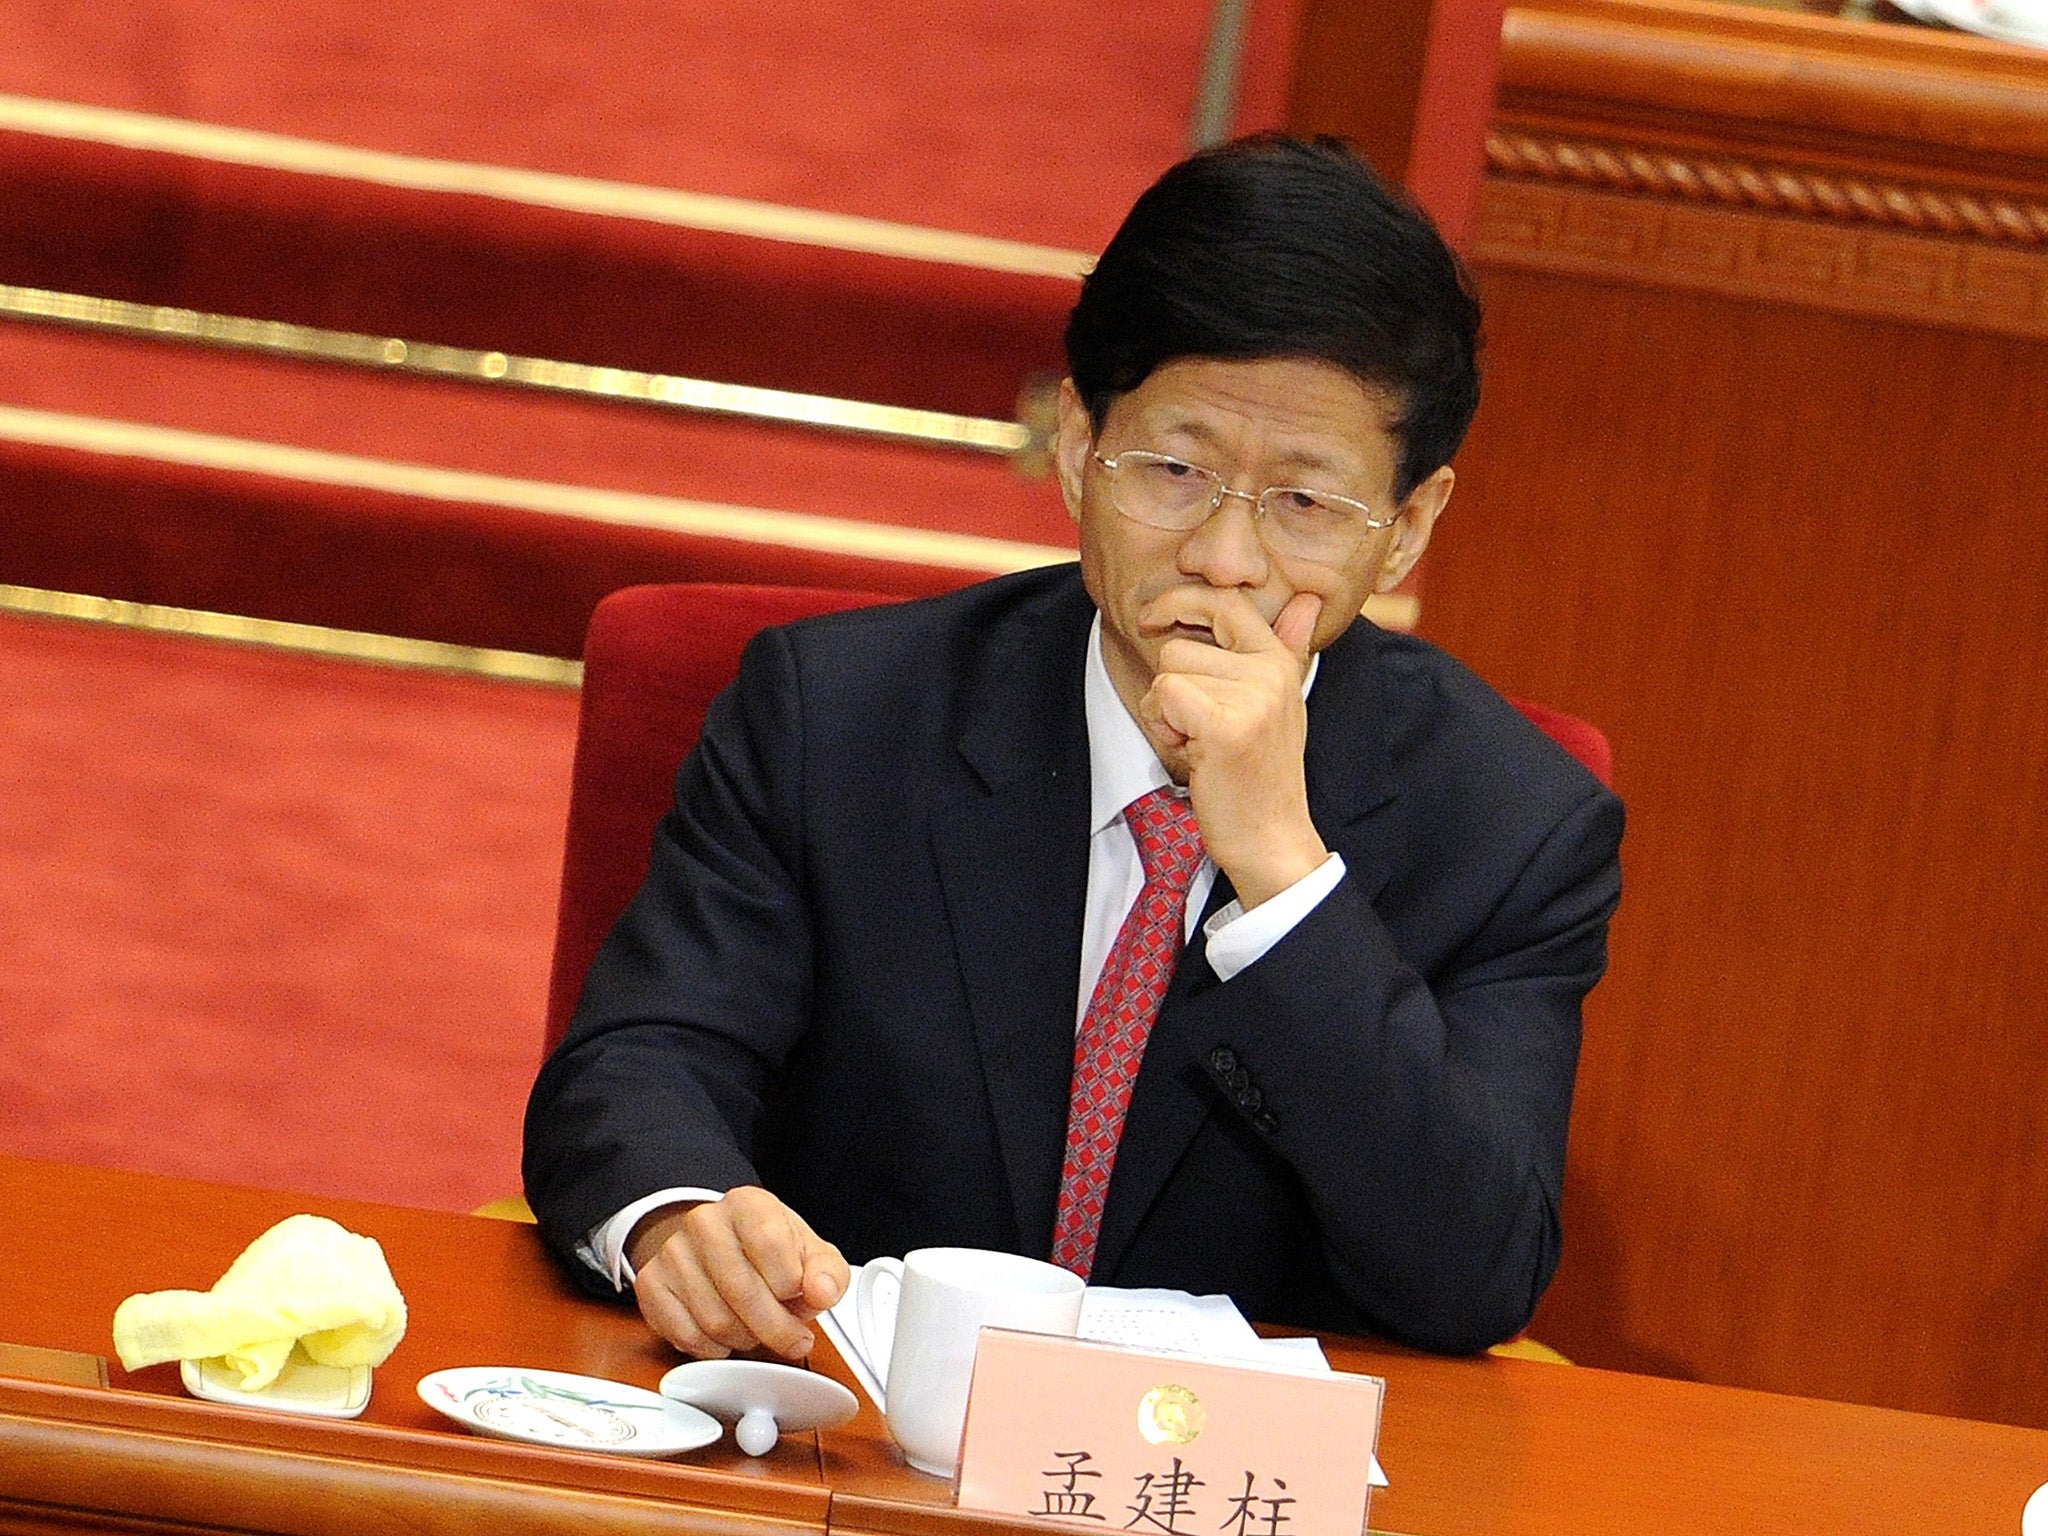 Meng Jianzhu is China's top security boss